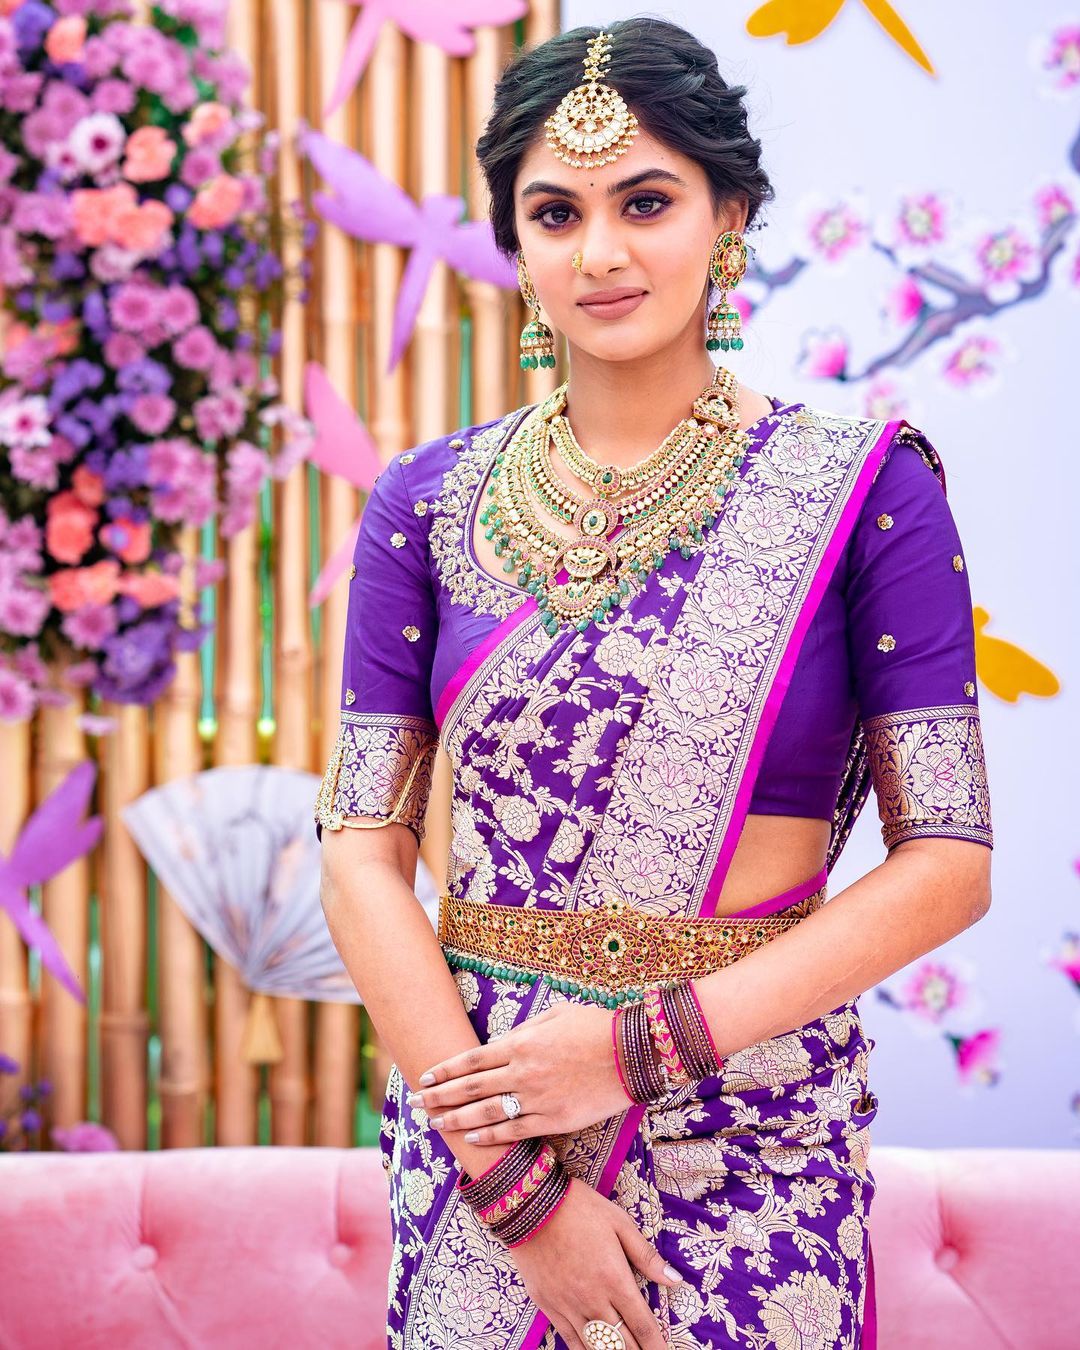 Bridal Hair Accessories Looks for Punjabi Brides | Indian bridal fashion,  Long skirt top designs, Punjabi hairstyles